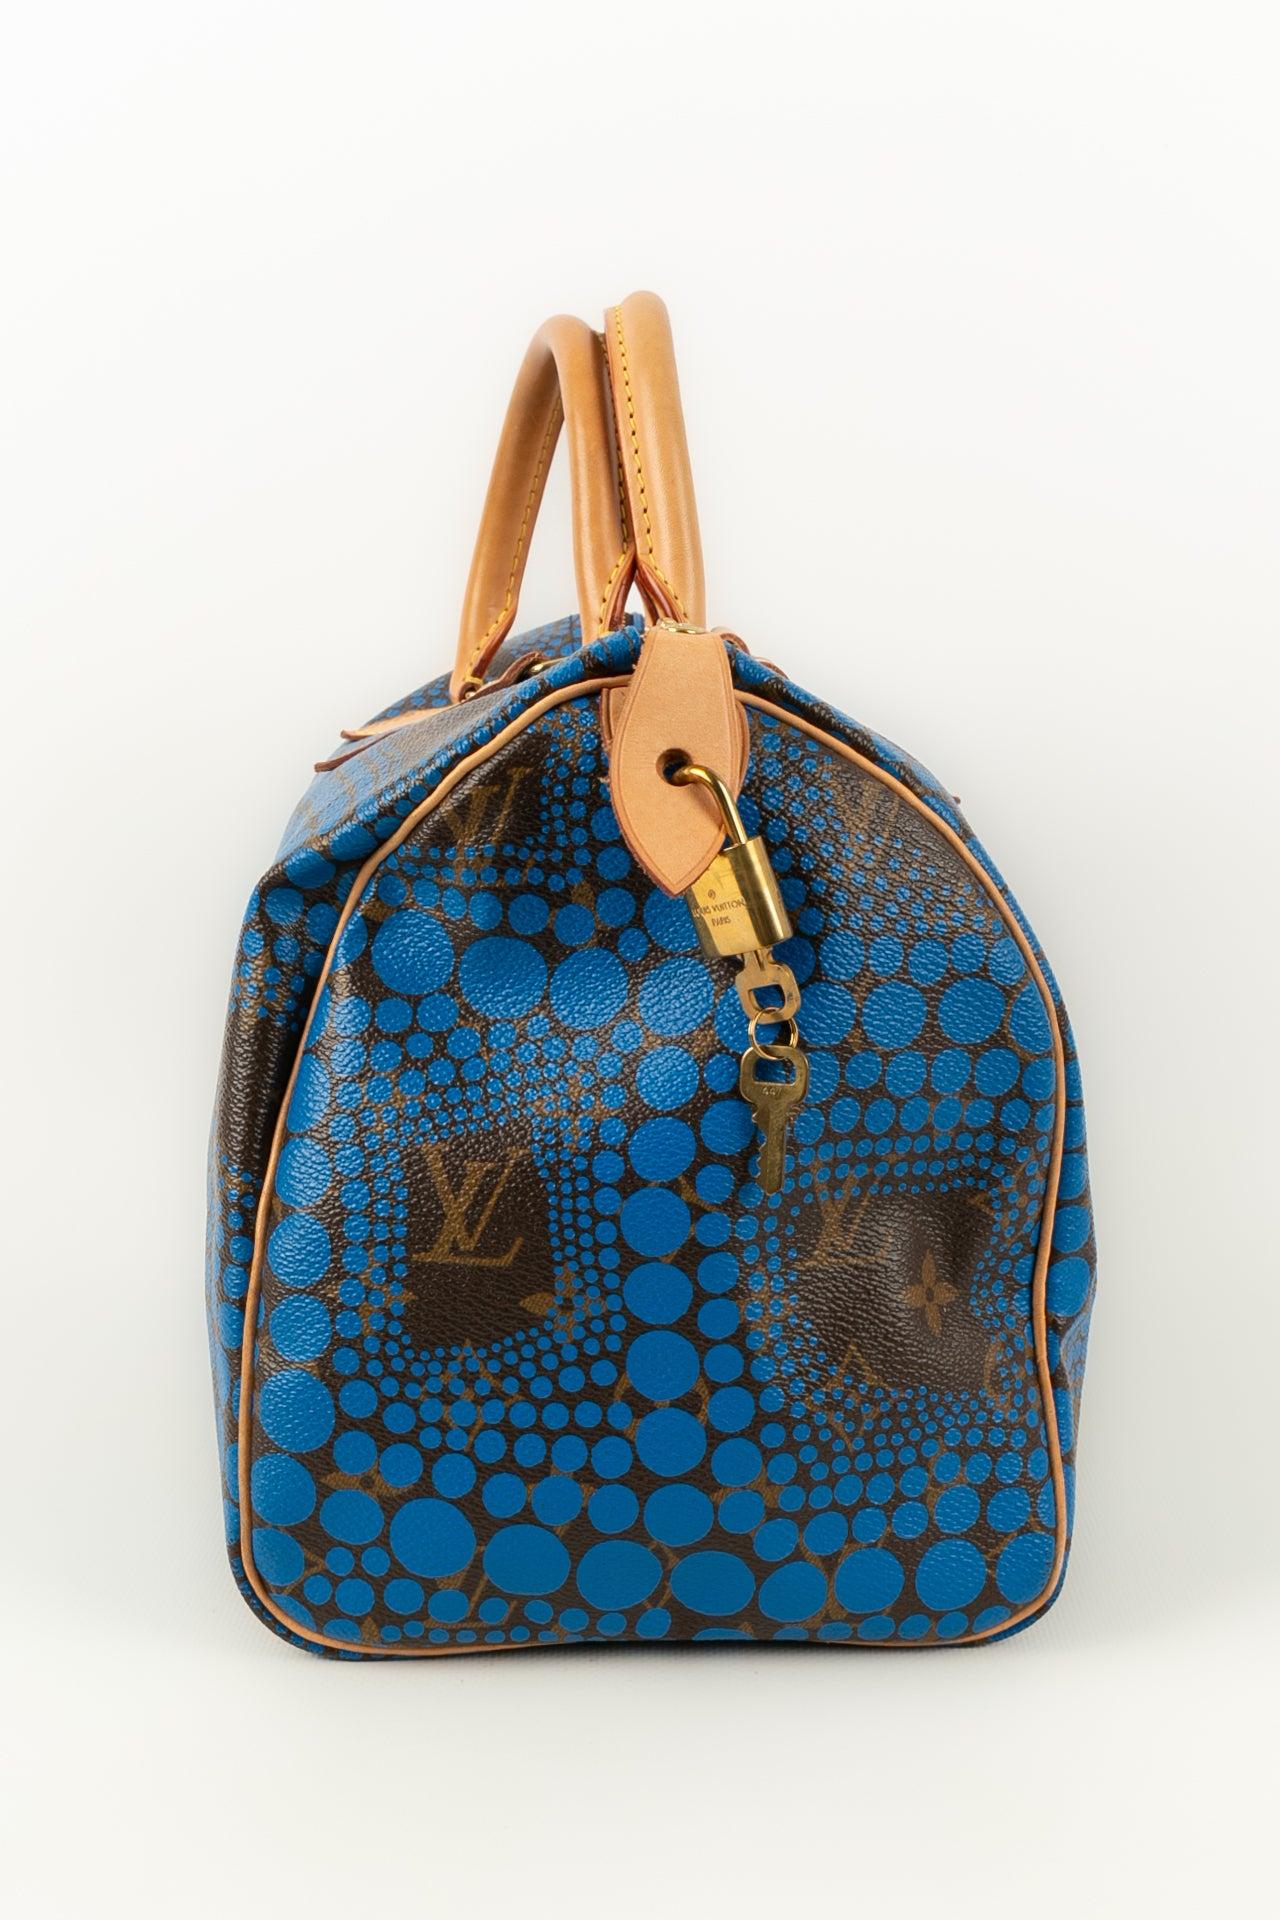 Louis Vuitton - (Made in France) Ledertasche mit Monogram, entworfen von der Künstlerin Yayoi Kusama. CIRCA 2012er Jahre.

Zusätzliche Informationen: 
Abmessungen: Höhe: 26 cm, Länge: 30 cm, Tiefe: 17 cm, Henkel: 28 cm
Zustand: Sehr guter